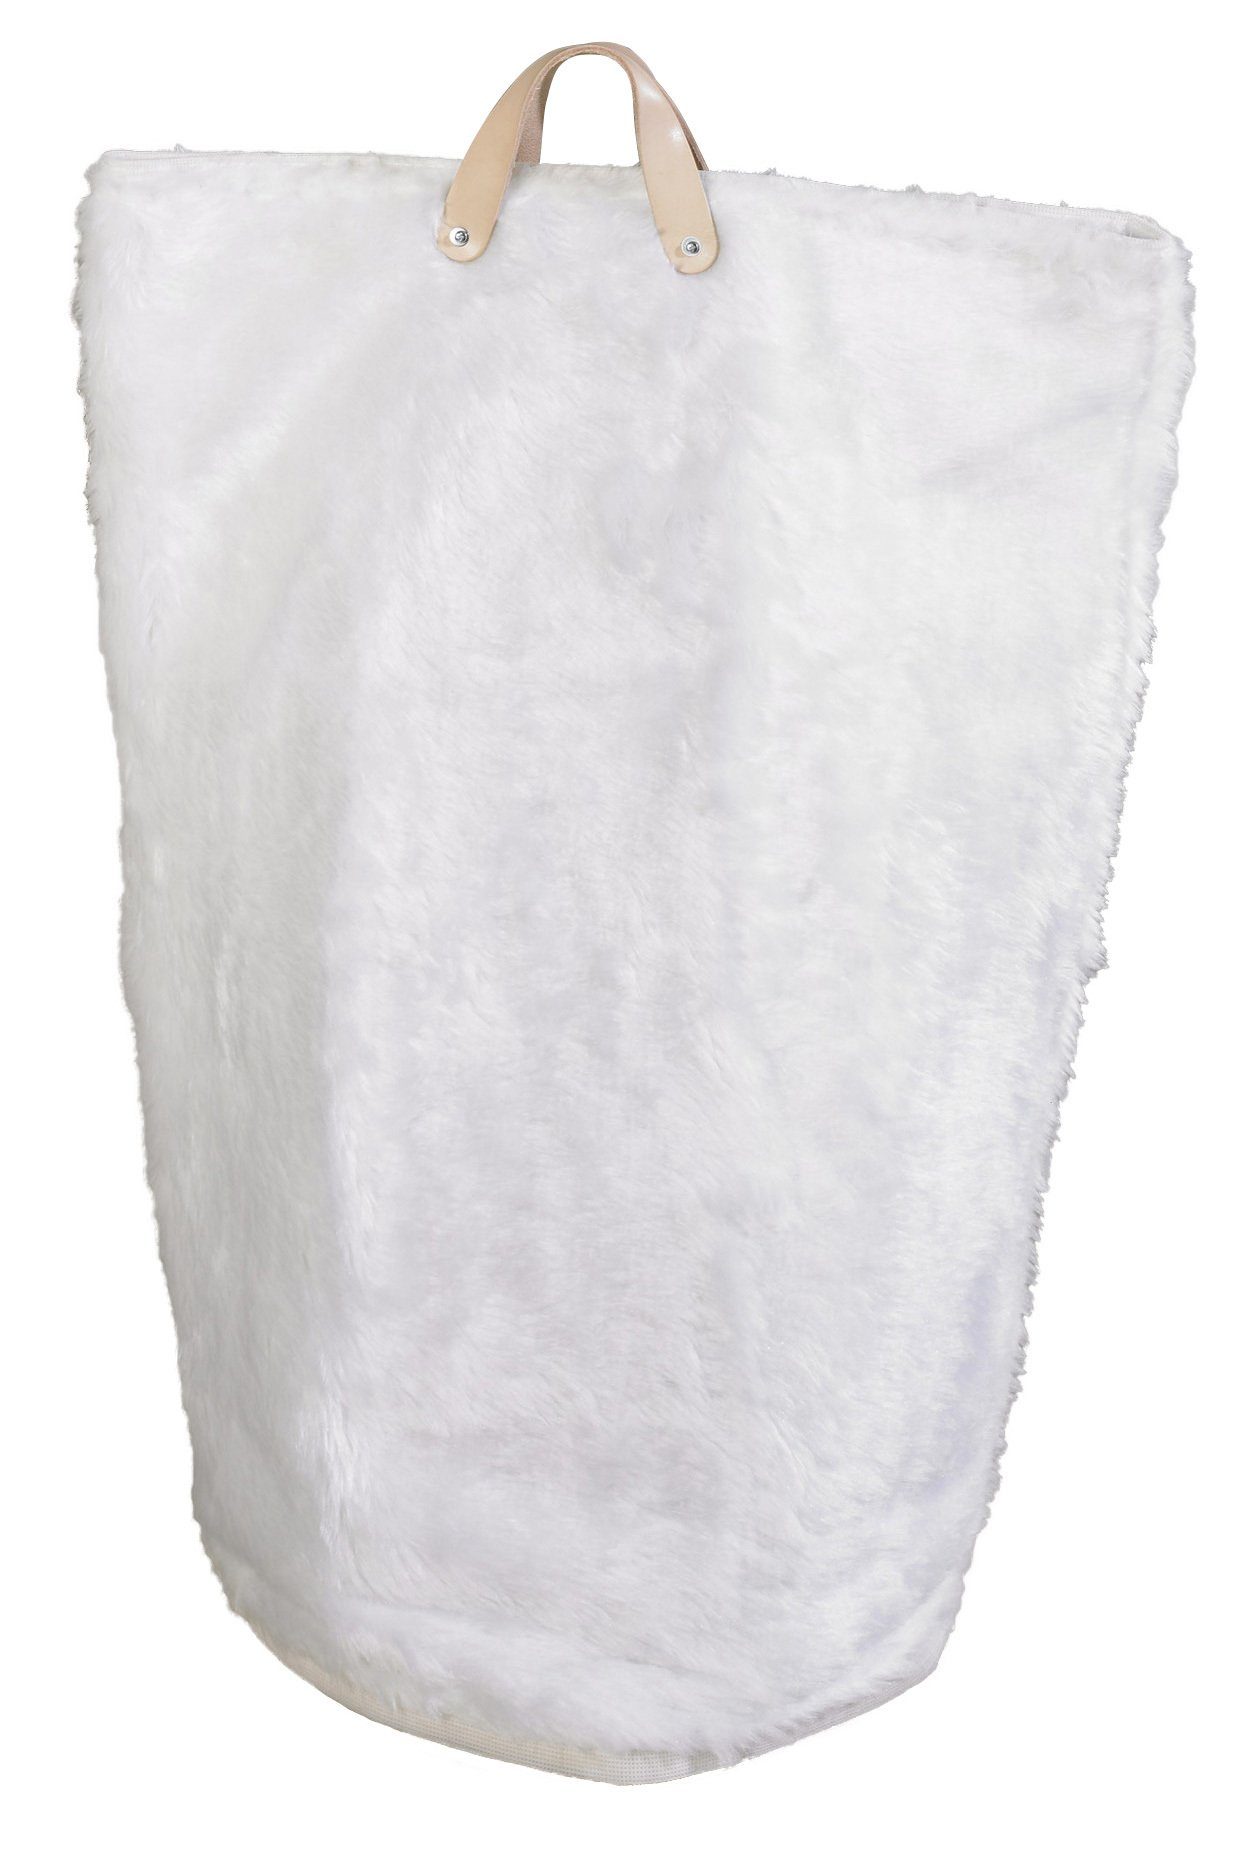 ARTRA Wäschetasche Fellimitat Weiß Wäschebeutel, "Maja" Wäschesack, Wäschekorb St), (1 Bad Multifunktionstasche in und Wäschesammler Wäschetaschen